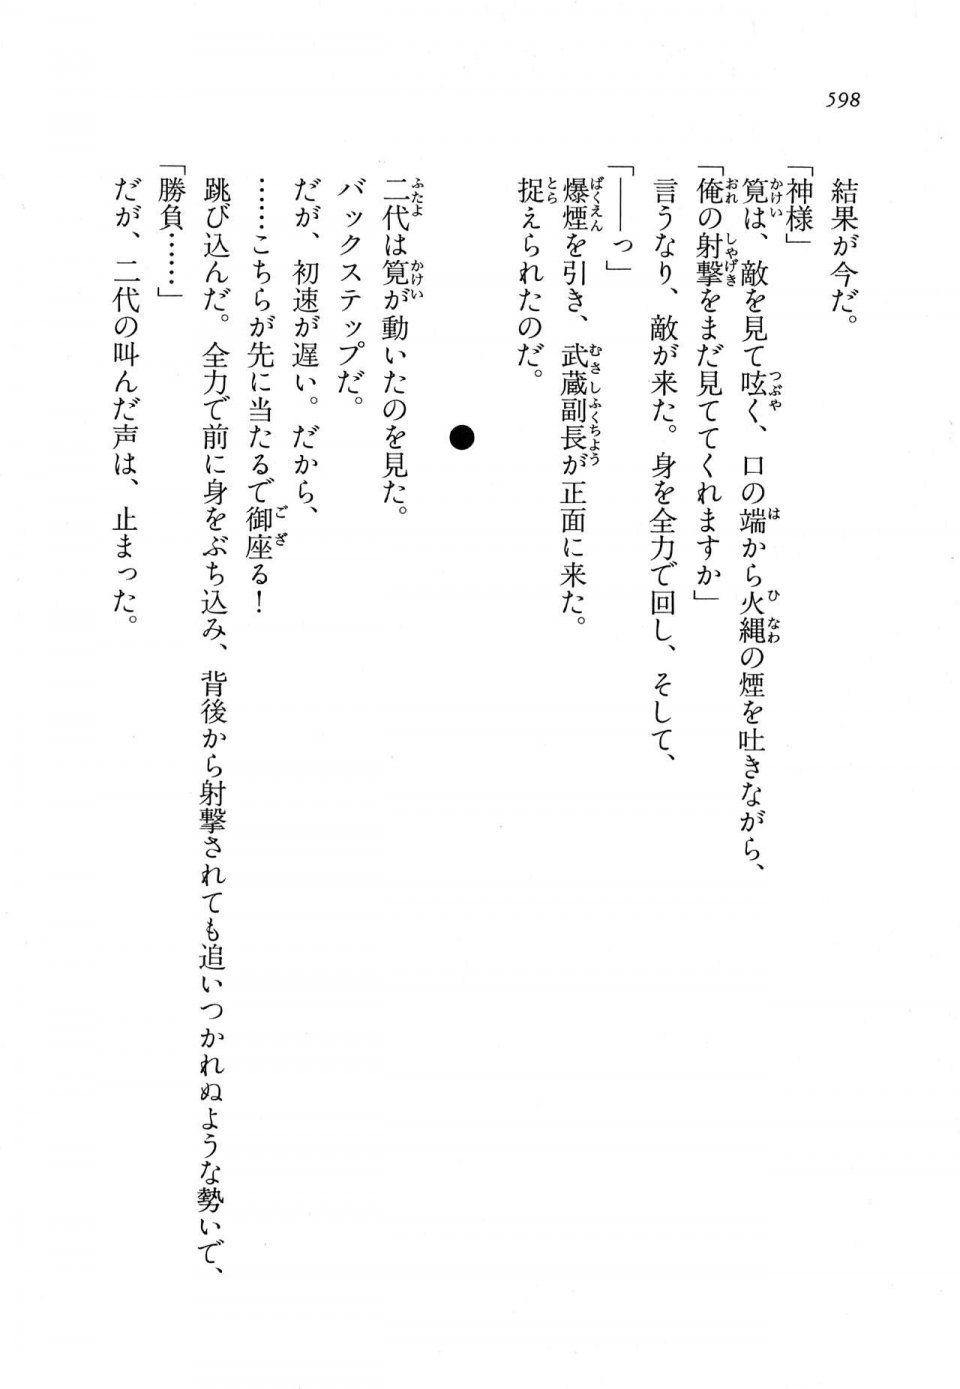 Kyoukai Senjou no Horizon LN Vol 11(5A) - Photo #598